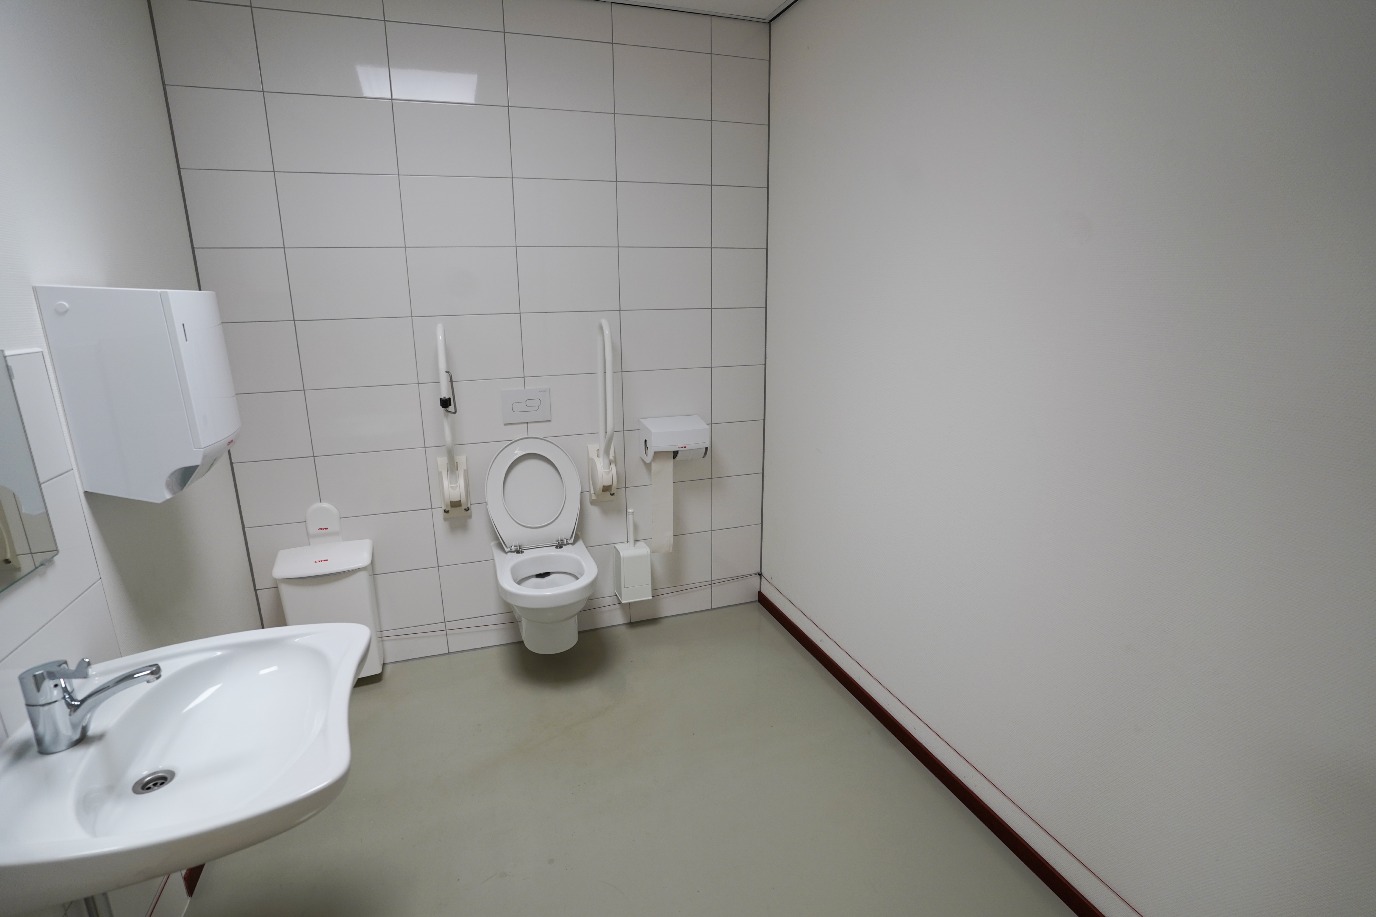 Rolstoelvriendelijke toilet op locatie